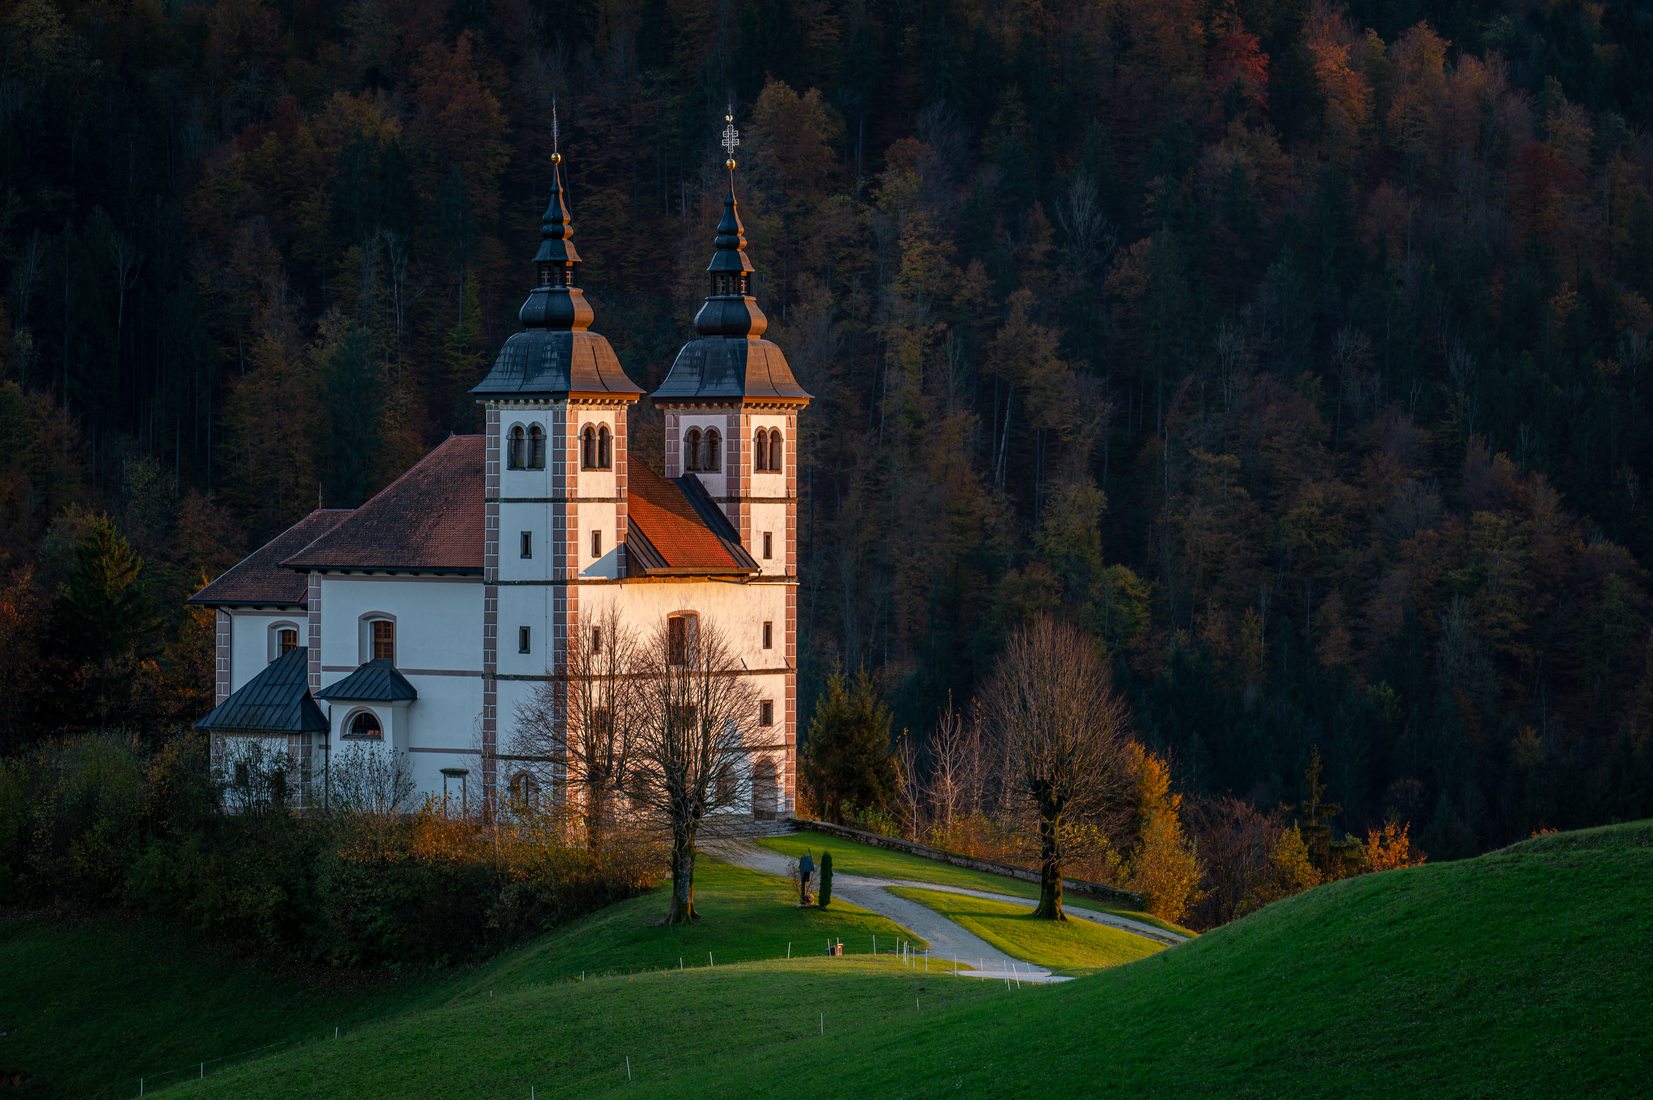 Cerkev Sv. Volbenka, Slovenia